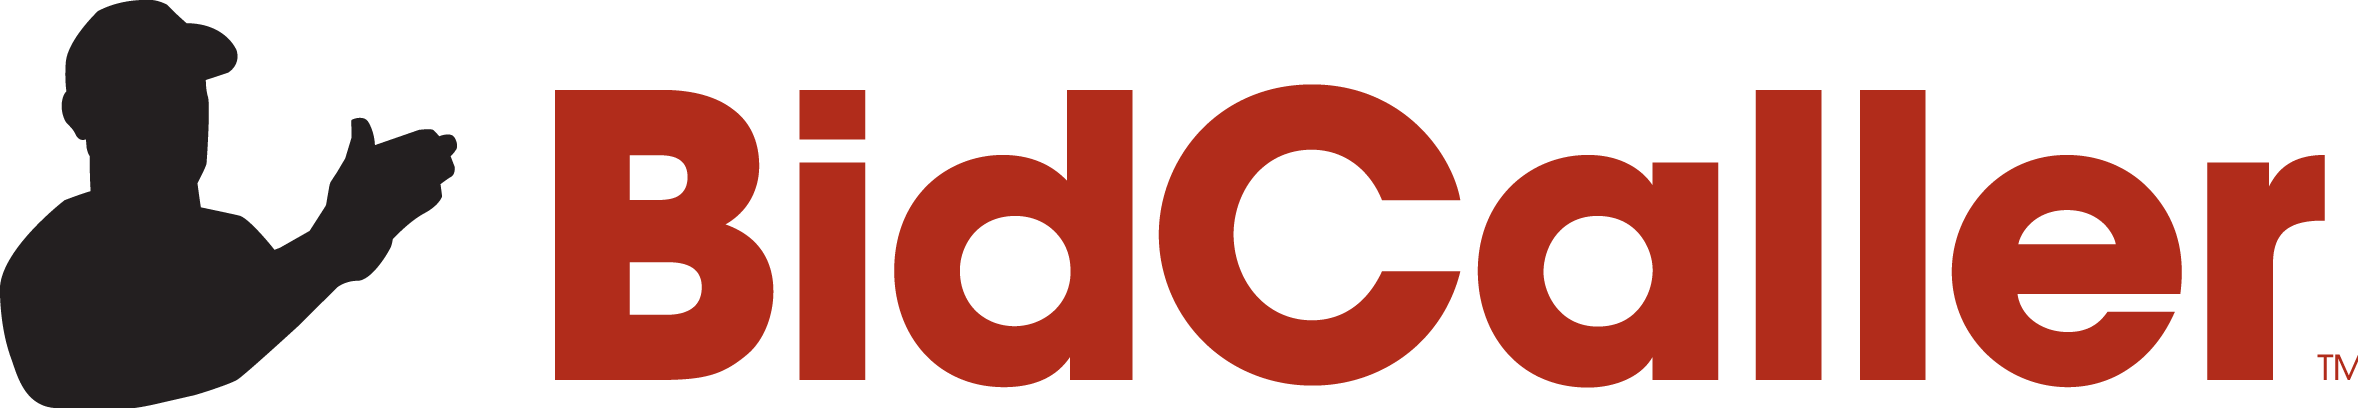 Bidcaller Logo - Bid Caller Logo (2358x408)